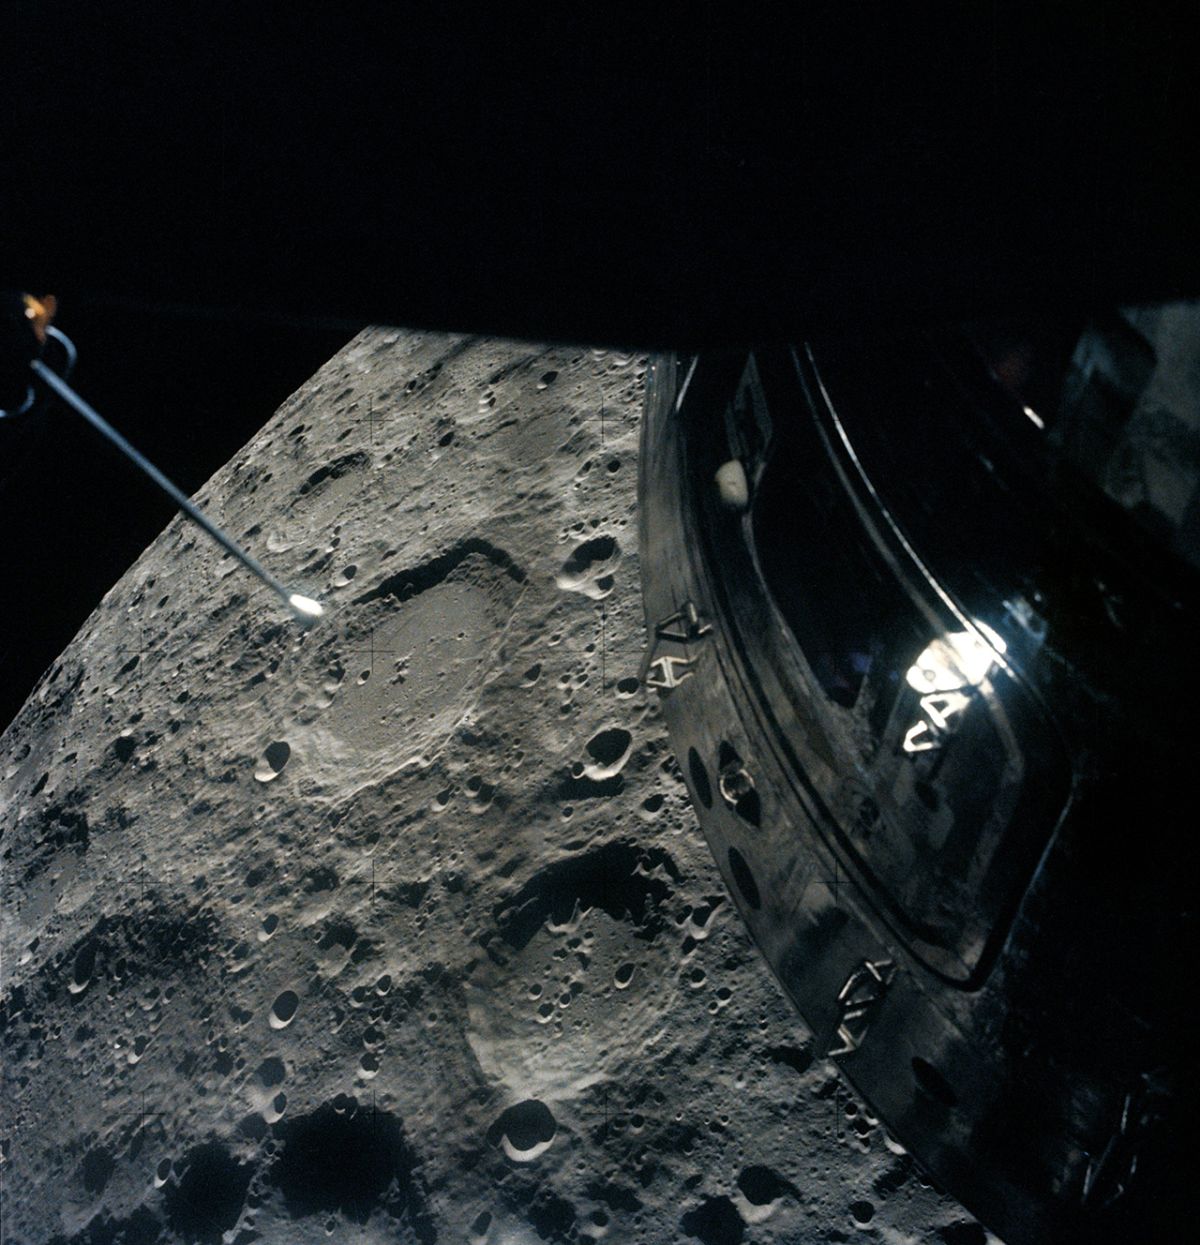 Вид з місячного модуля місії Аполлон-13, знятий 15 квітня 1970 року — через день після того, як екіпаж та космічний корабель встановили рекорд дальності польоту від Землі. Зображення: NASA